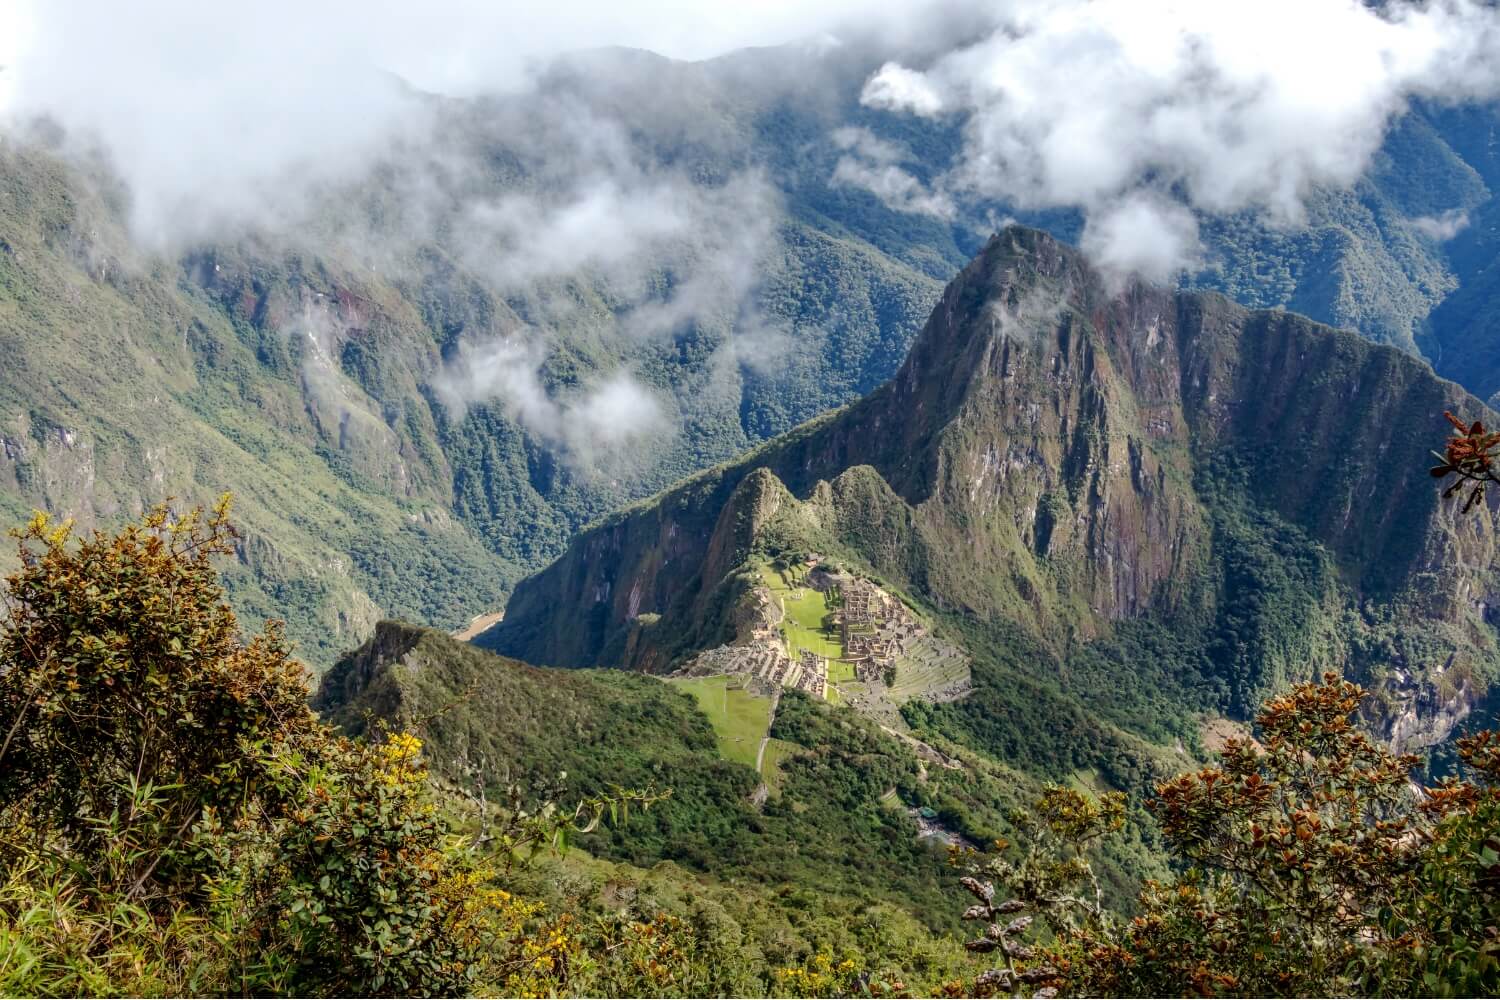 10 TAGE IN PERU: DIE PERFEKTE REISEREISE FÜR ABENTEUER